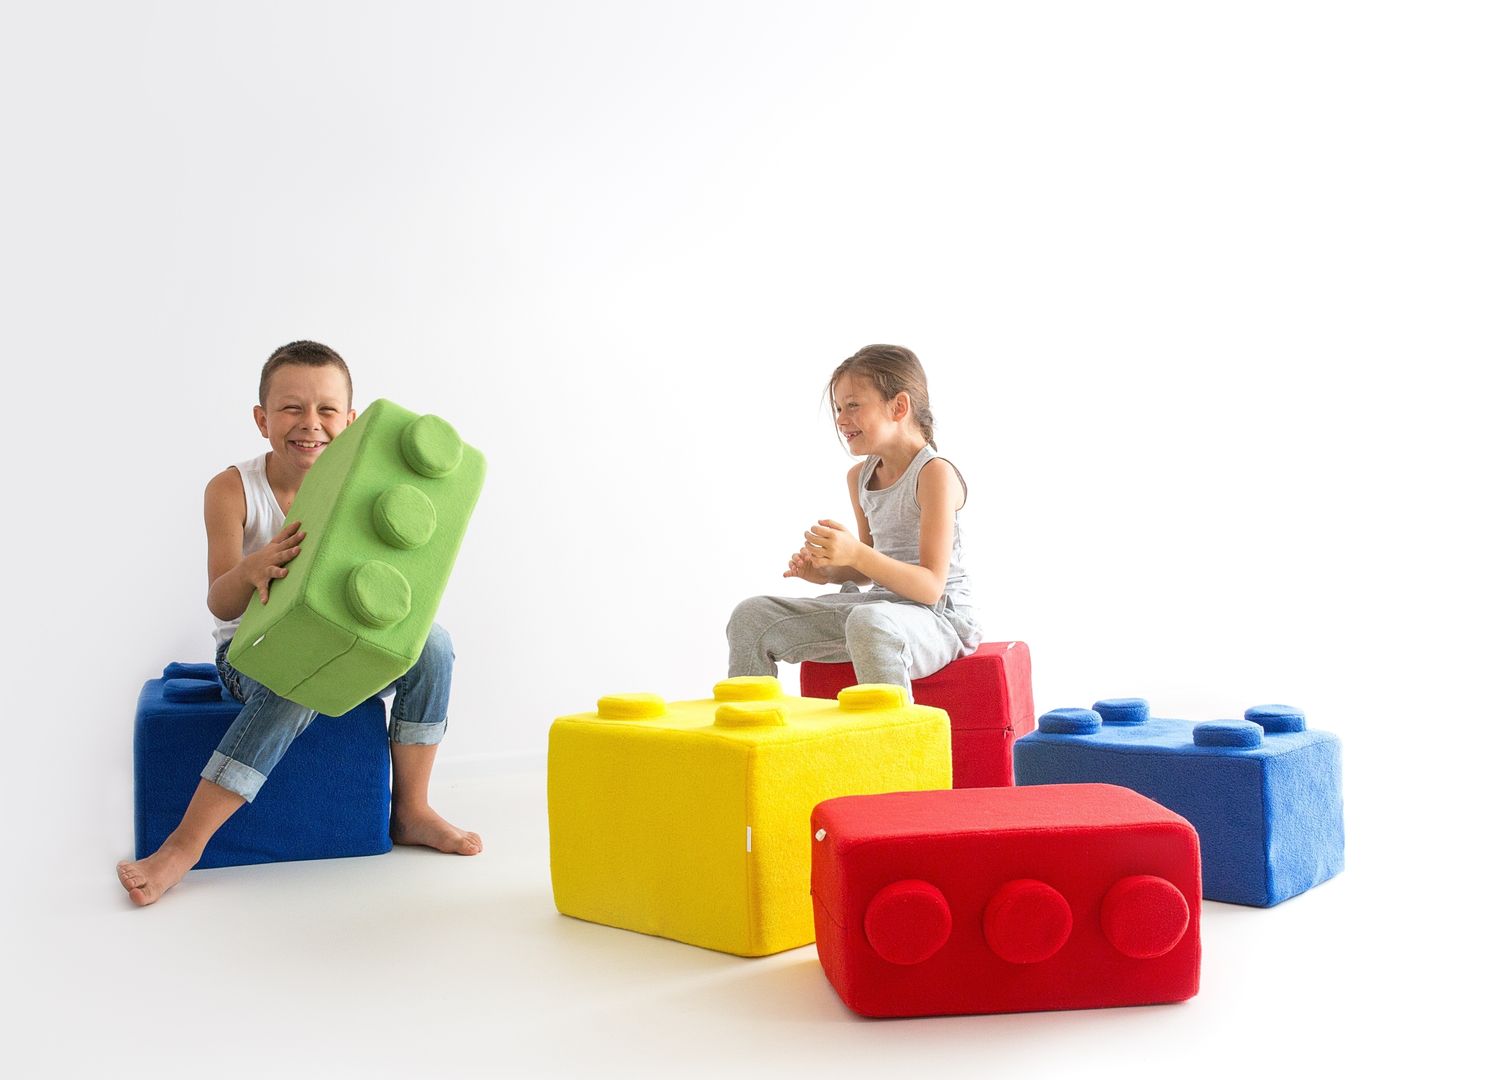 Poduchy LEGO, NOOBOO NOOBOO غرفة الاطفال ديكورات واكسسوارات